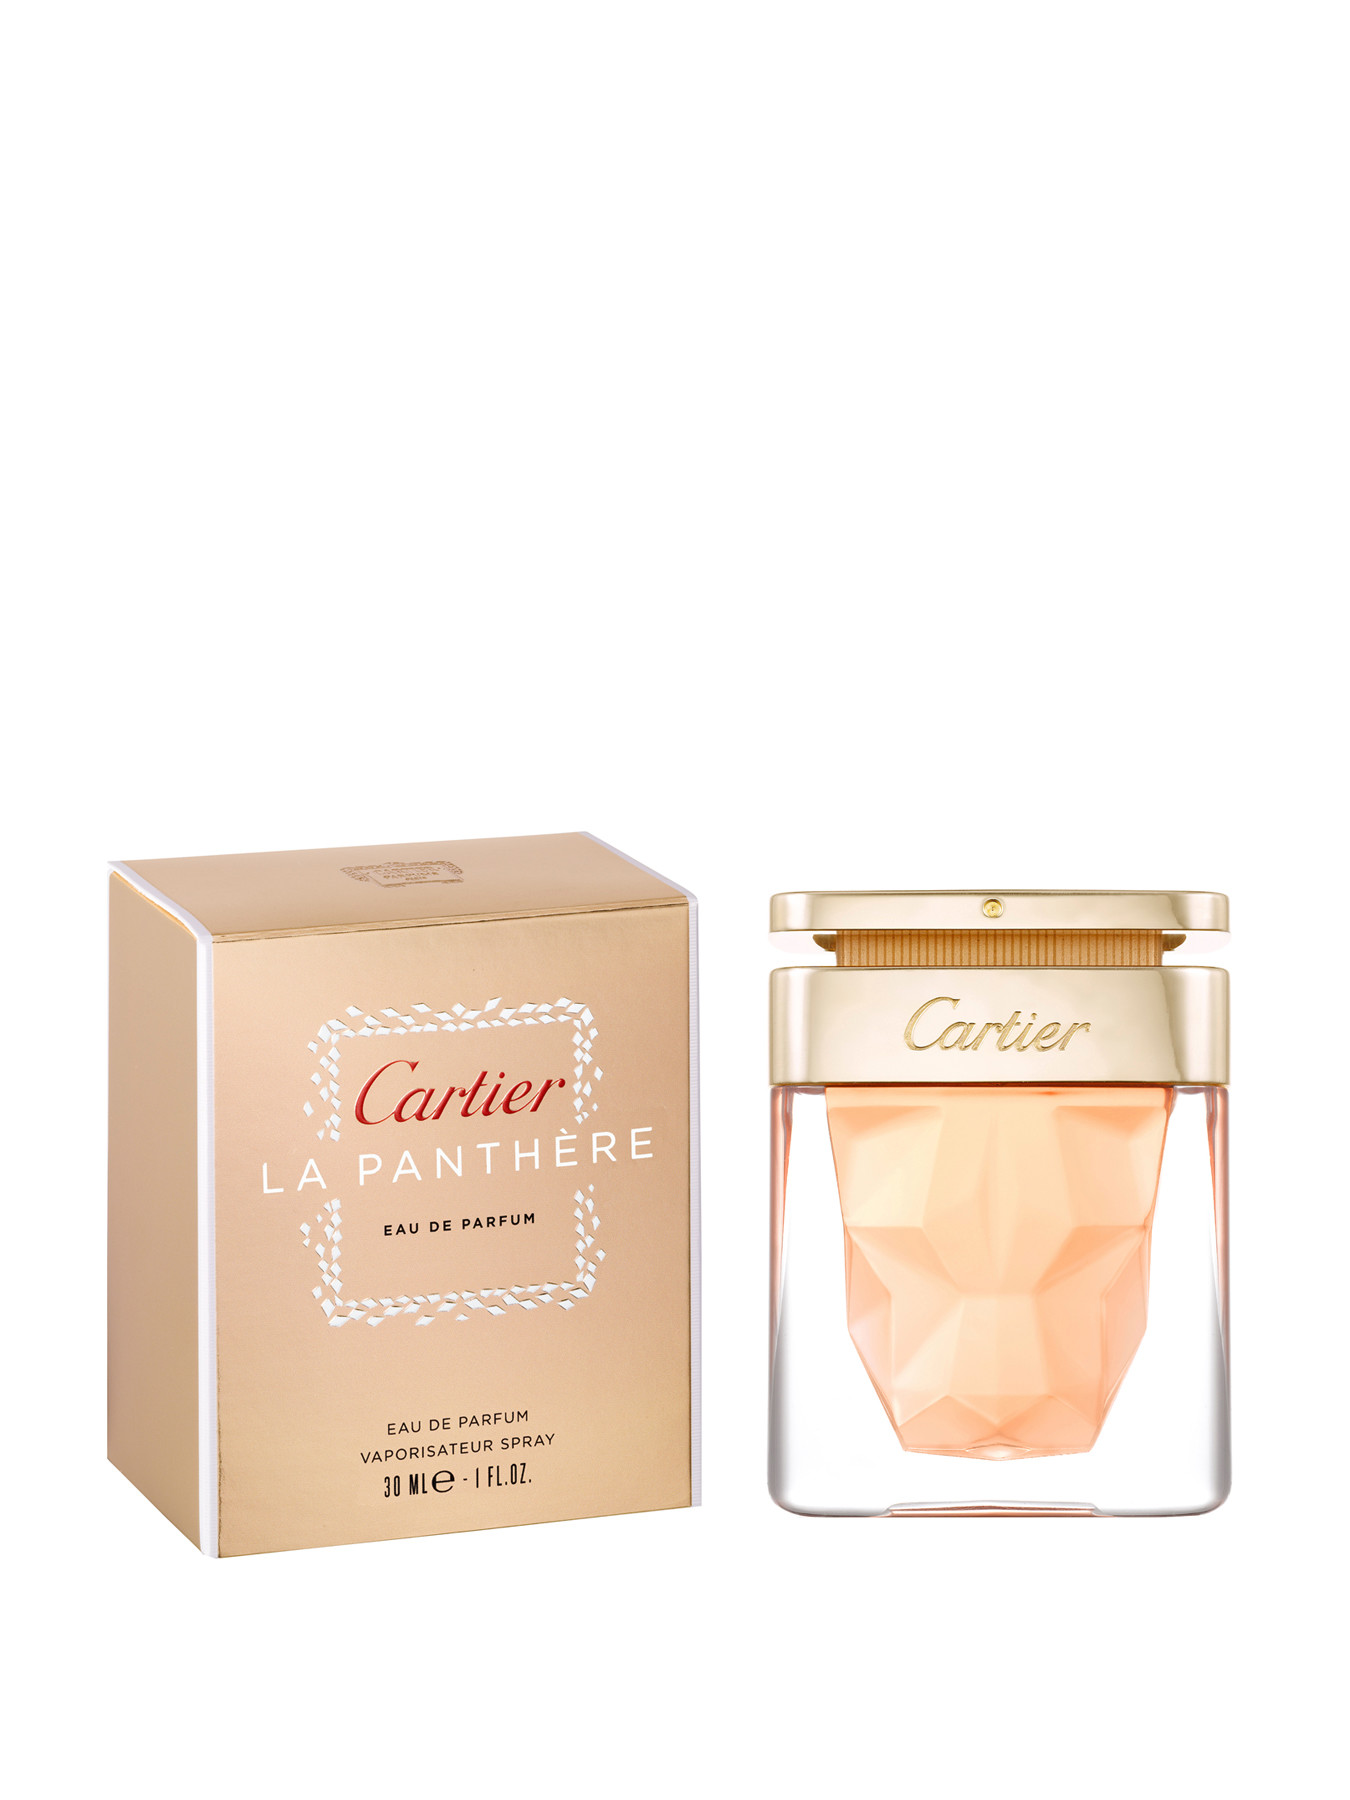 Cartier La Panthère Eau de Parfum 30ml | Fenwick